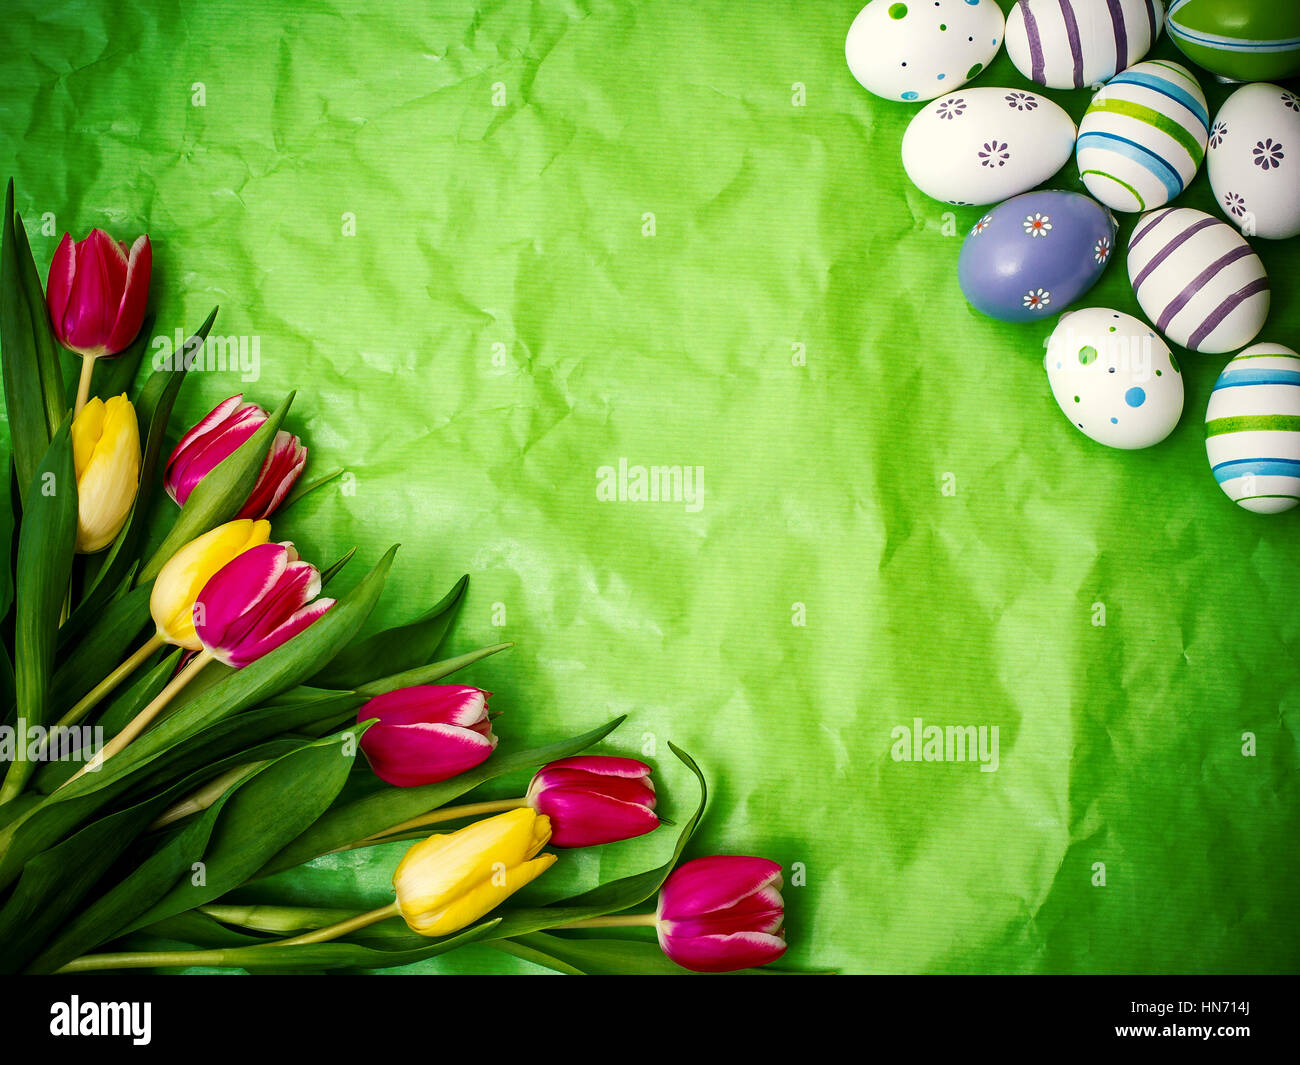 Uovo orientale, tulipani su verde crumpled carta di avvolgimento, vista dall'alto Foto Stock